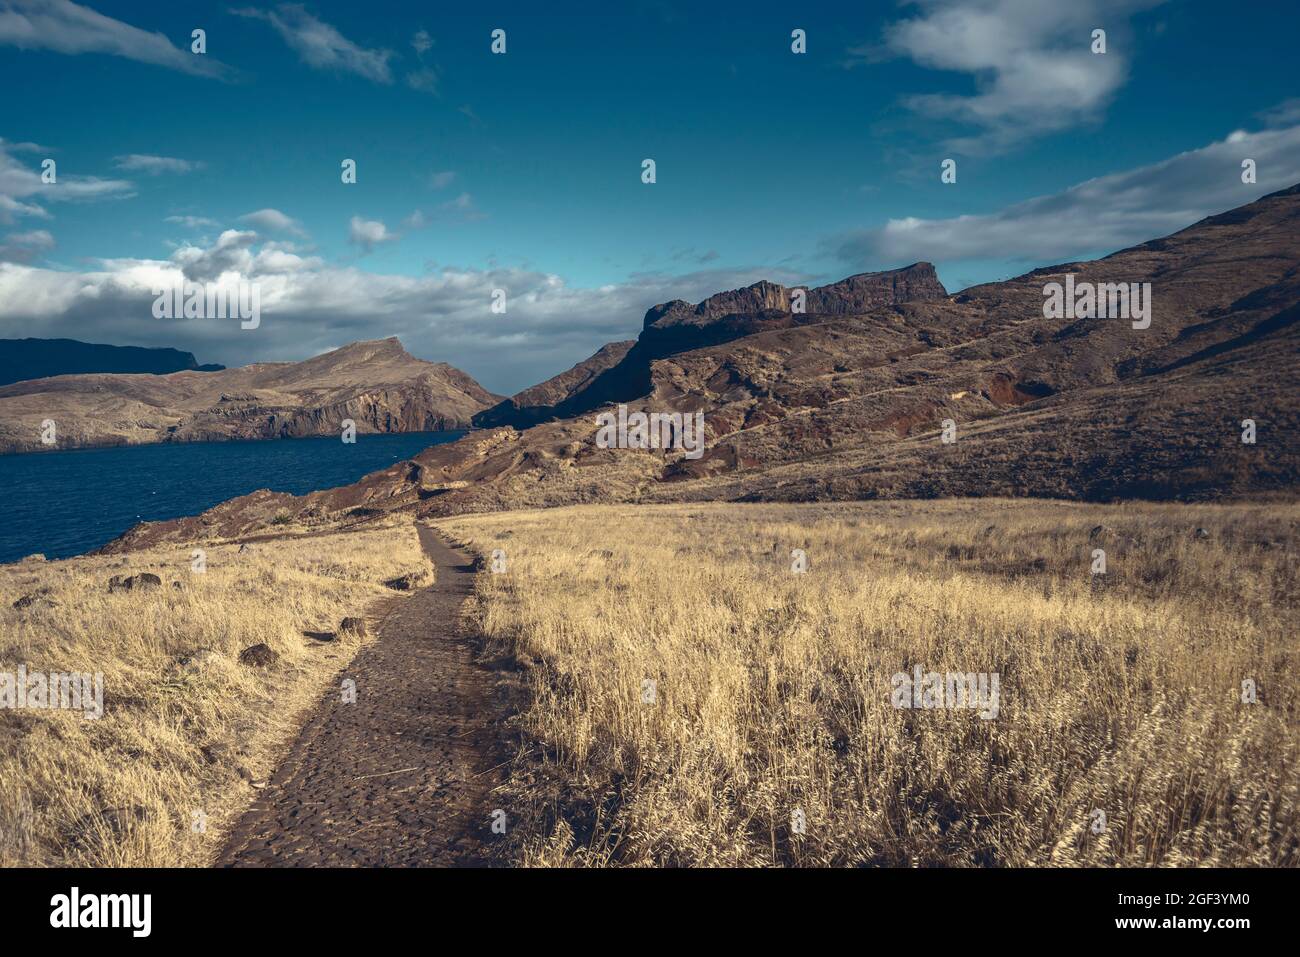 Paysage de montagne sauvage de l'île de Madère avec sentier de randonnée qui mène loin Banque D'Images